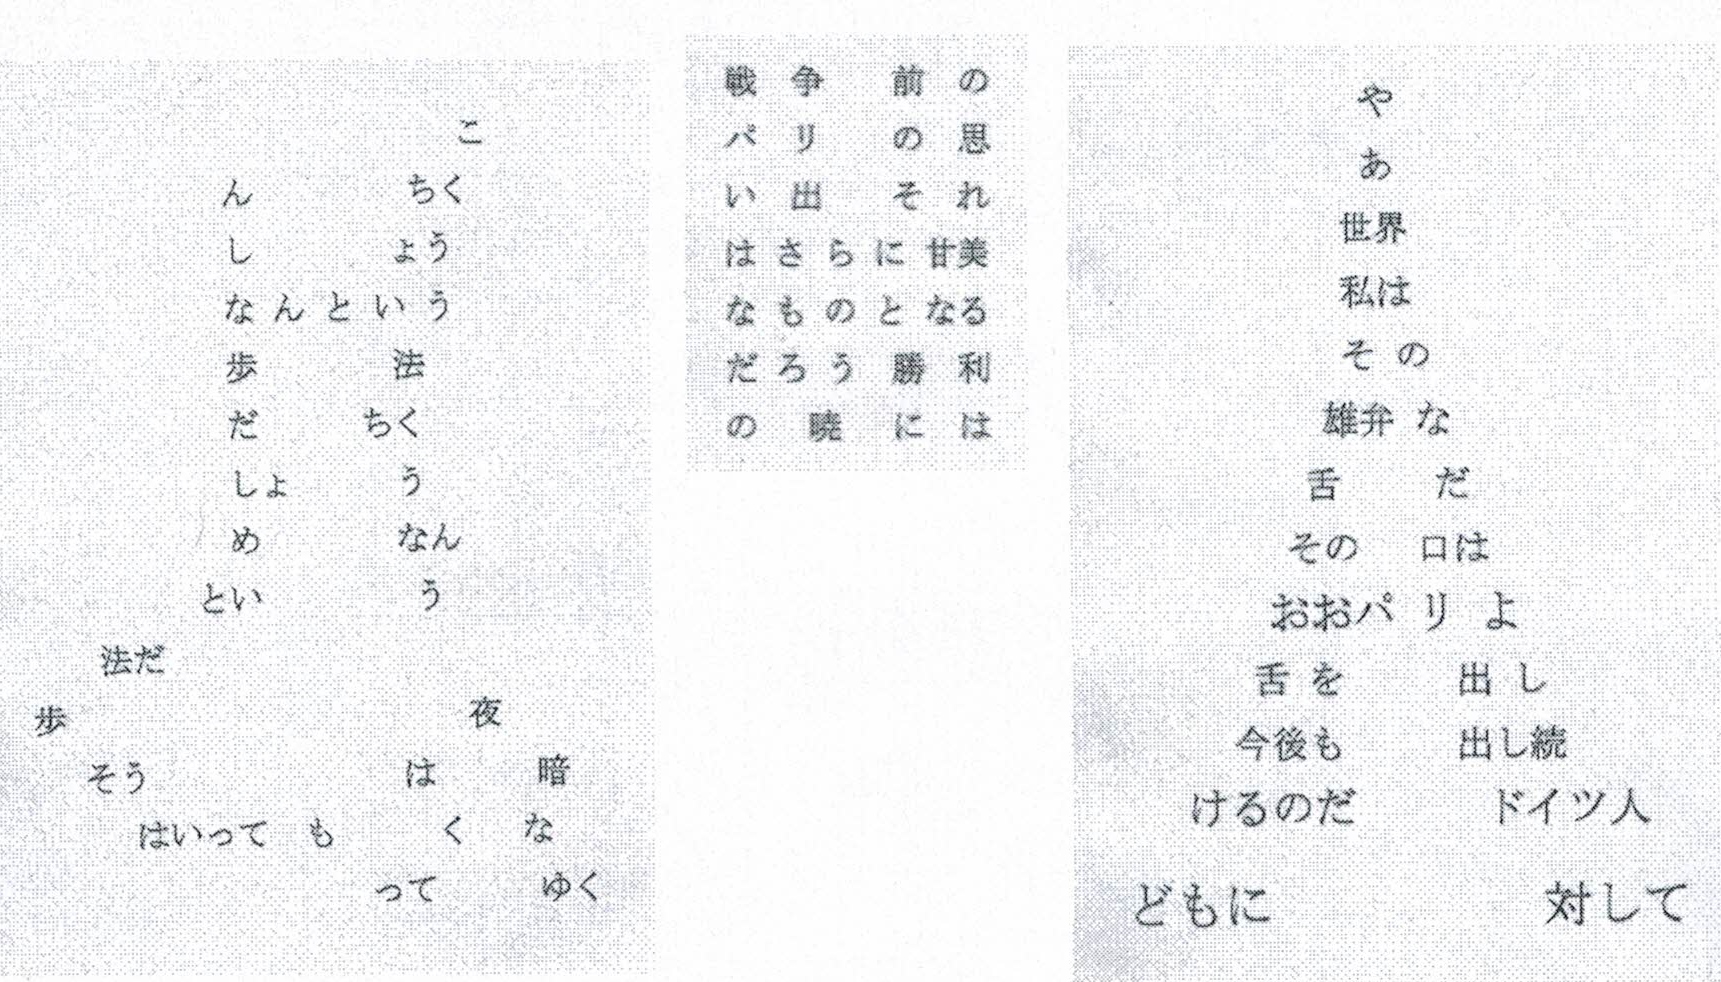 2～4番目のカリグラムの日本語訳